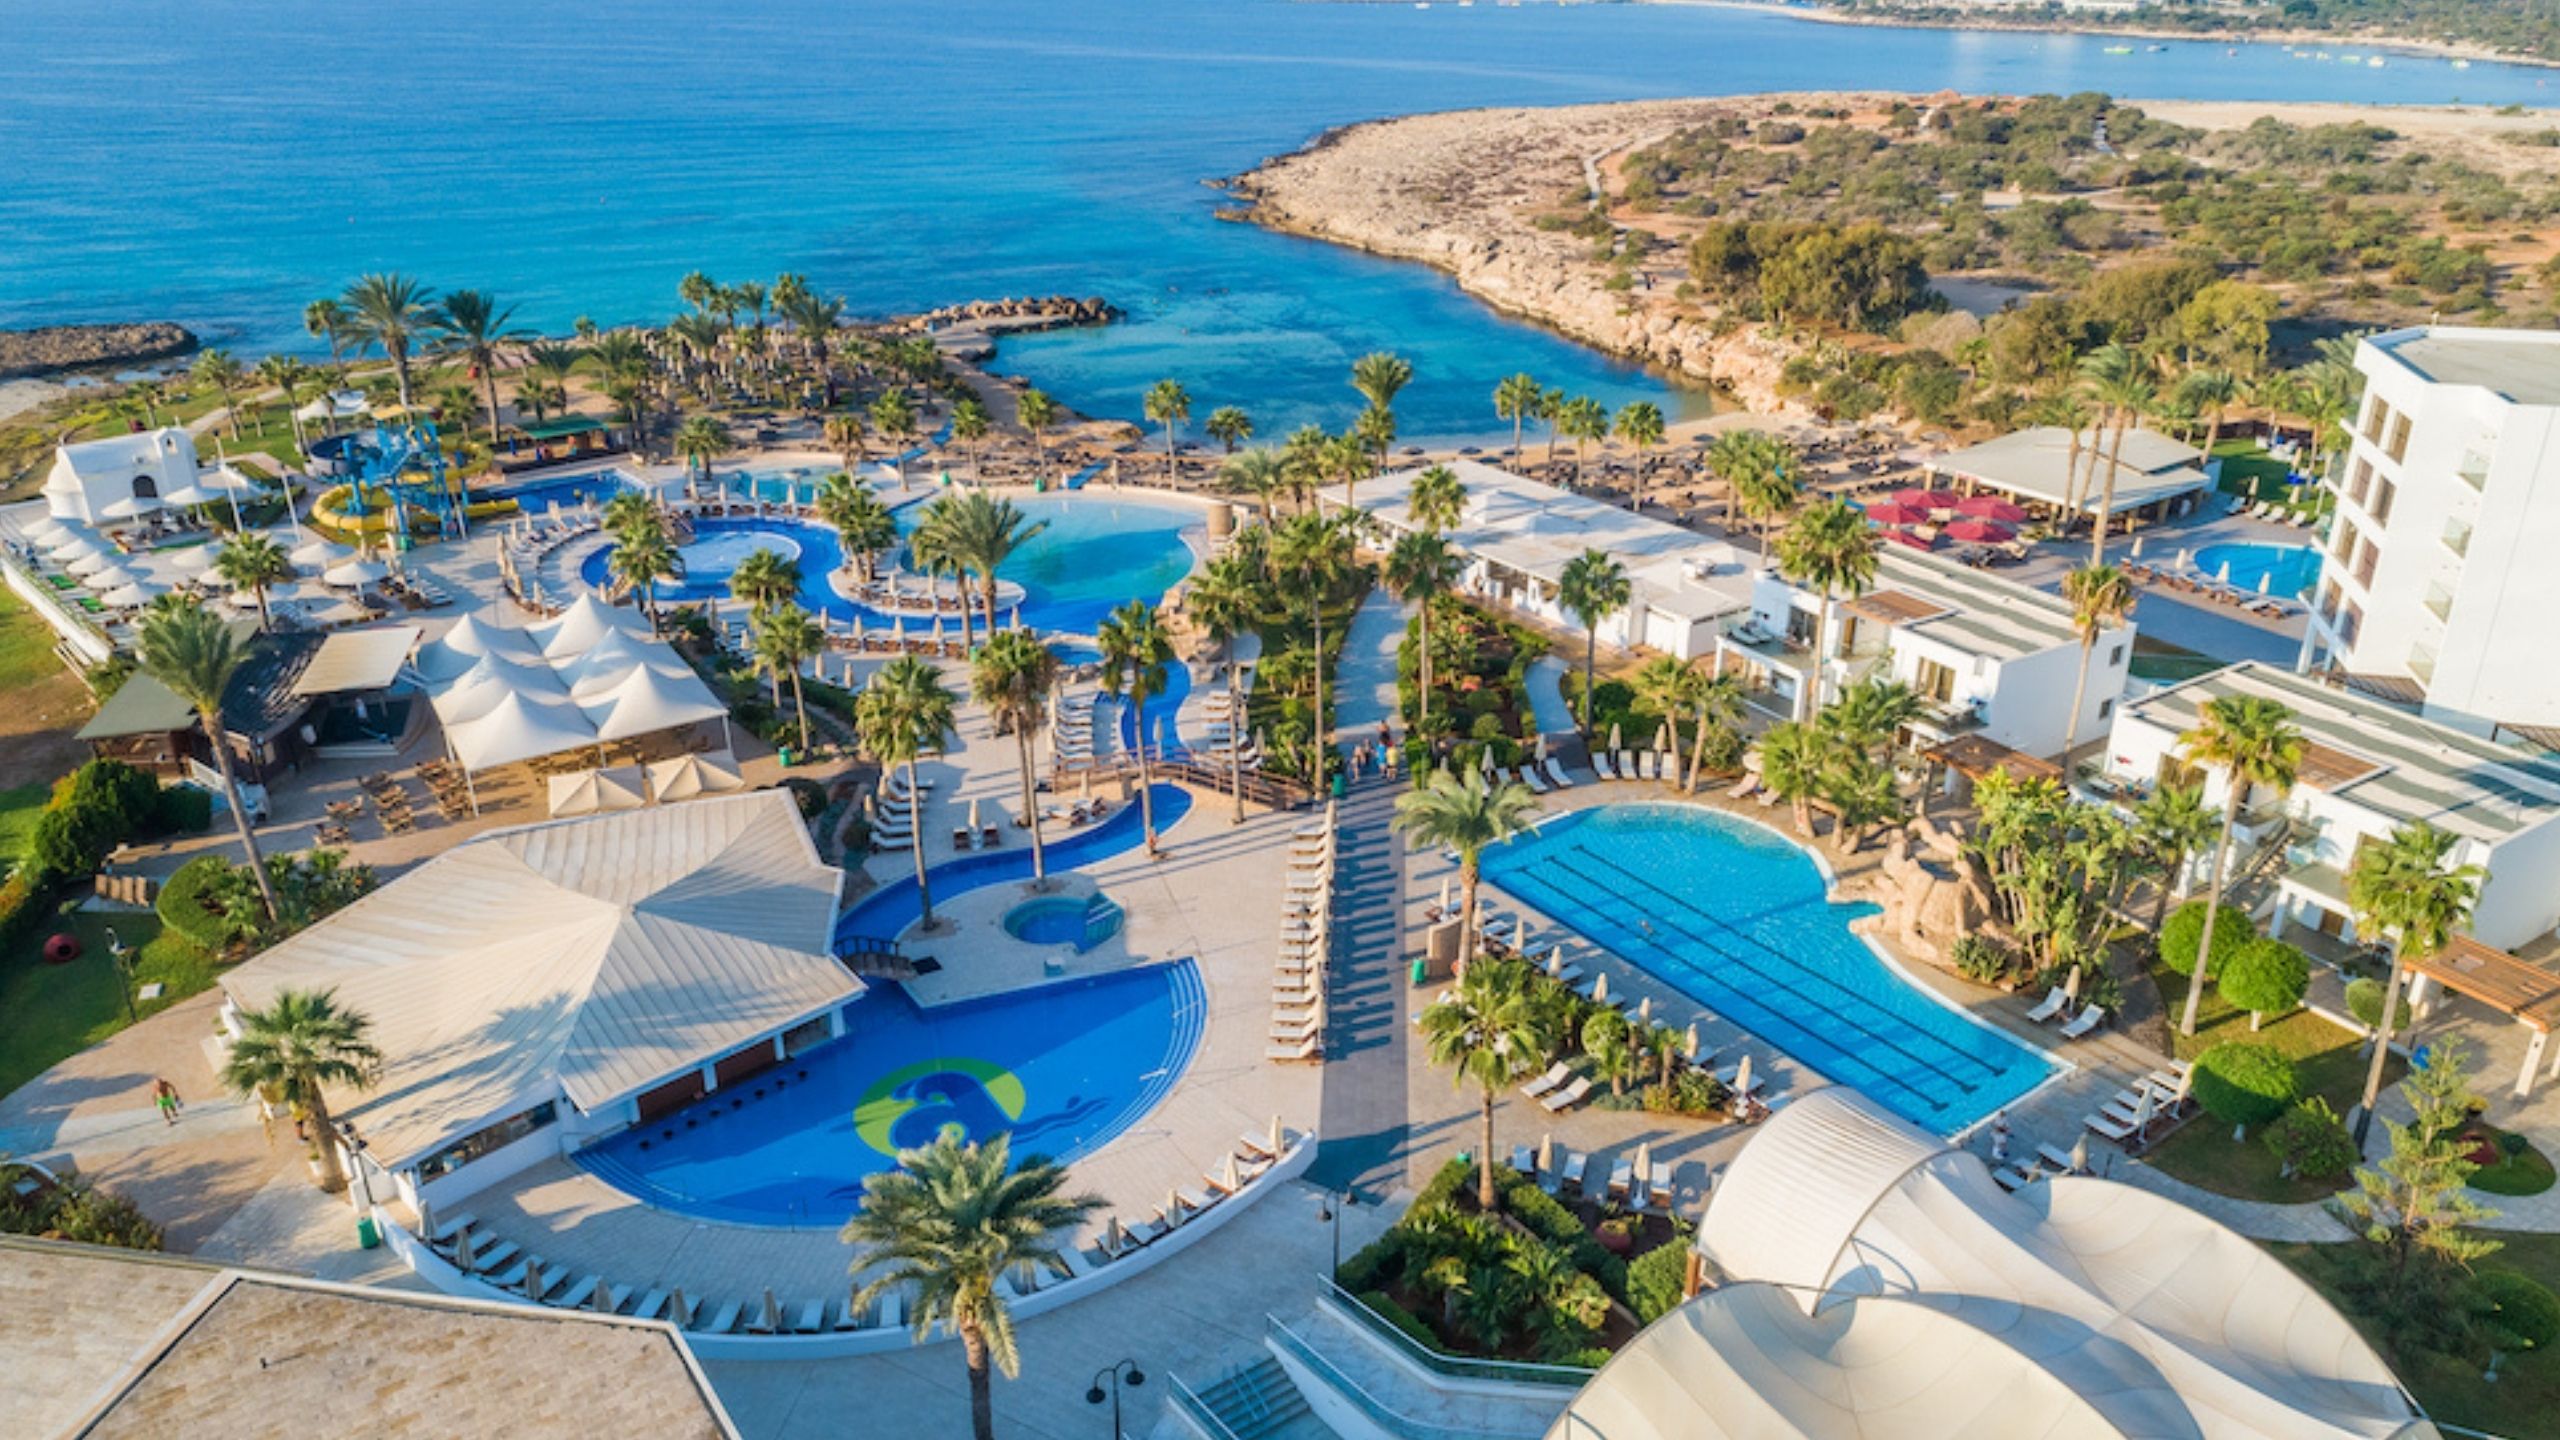 Adams Beach Hotel & Spa in Cyprus